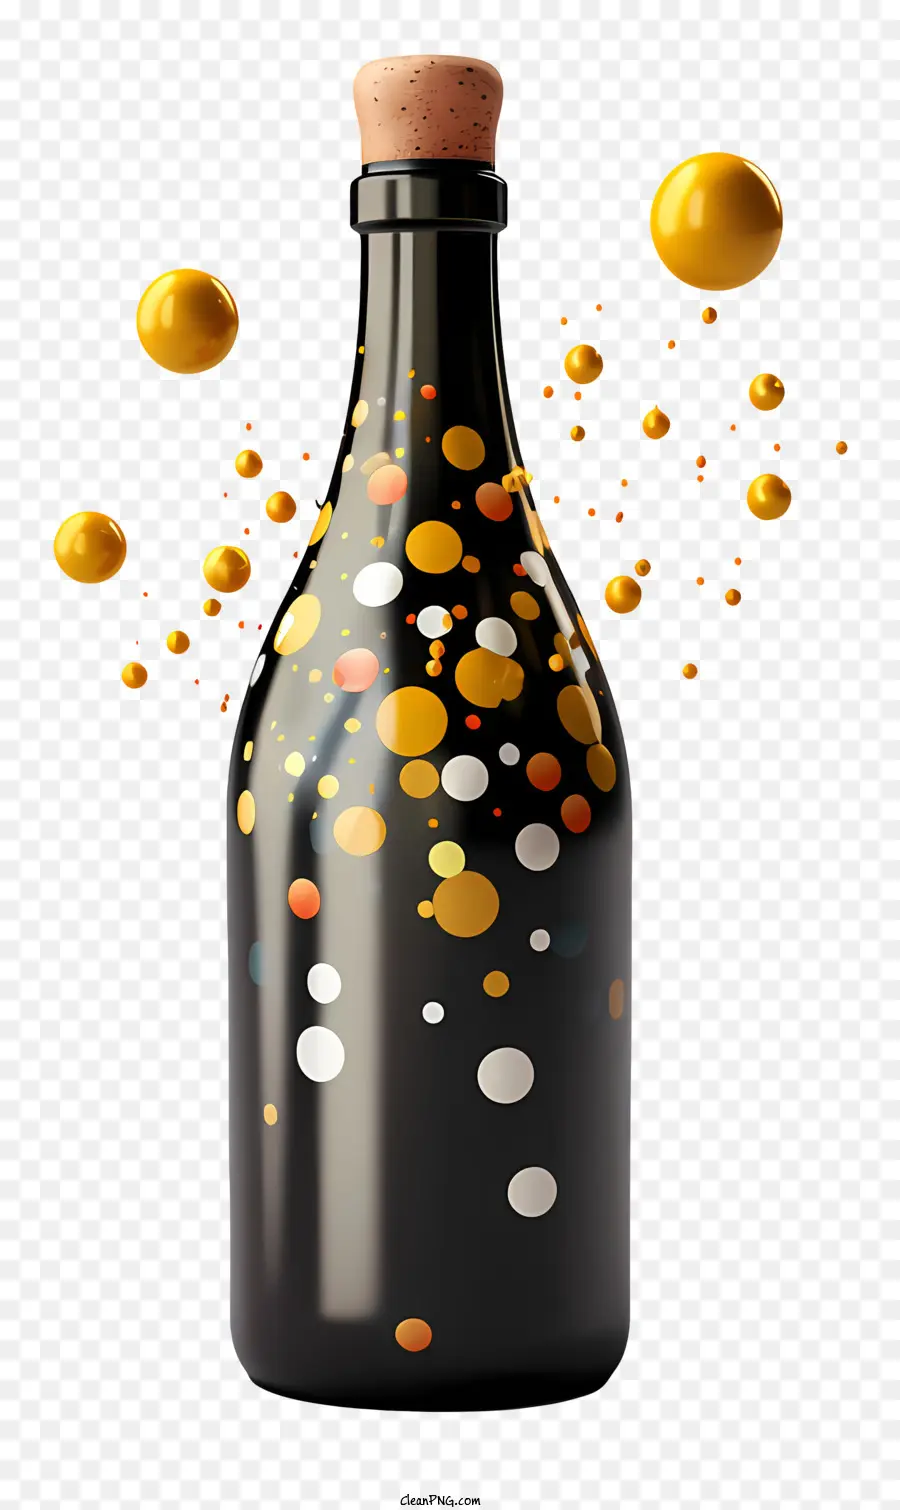 Schwarzer Flasche Gold und Orange Farbe klares flüssiges Blasen dynamisches Erscheinungsbild - Dynamische schwarze Flasche mit goldenen und orangefarbenen Blasen